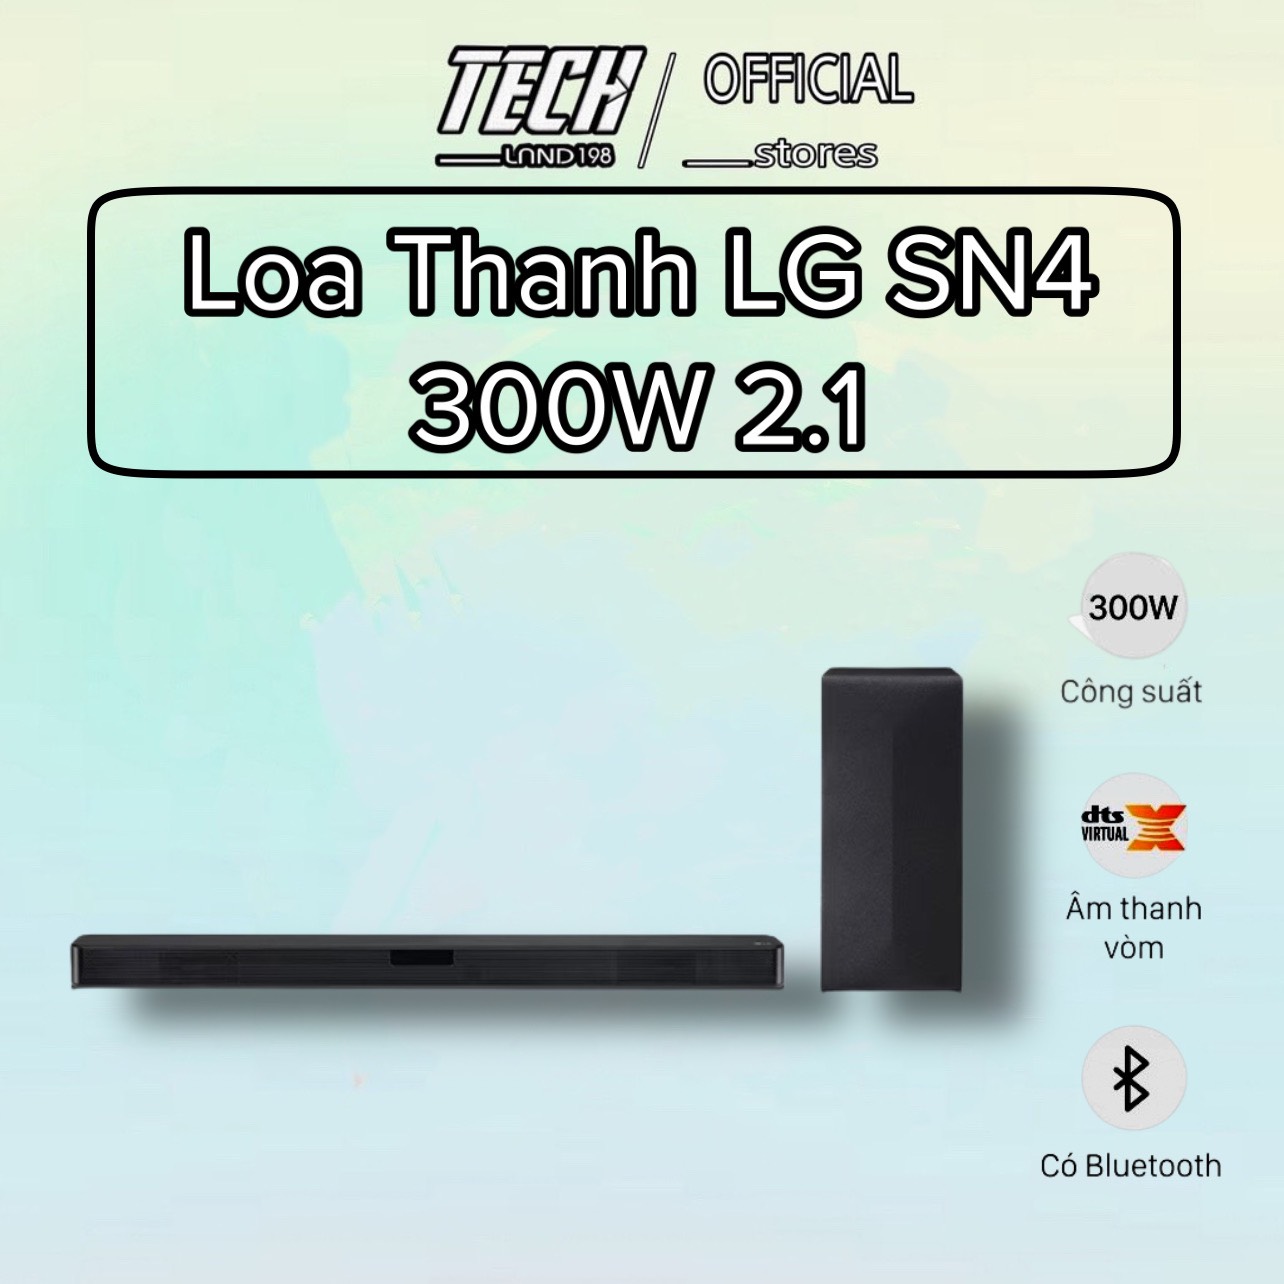 Bộ loa thanh LG SN4 300W 2.1 - hàng chính hãng - bảo hành 12 tháng